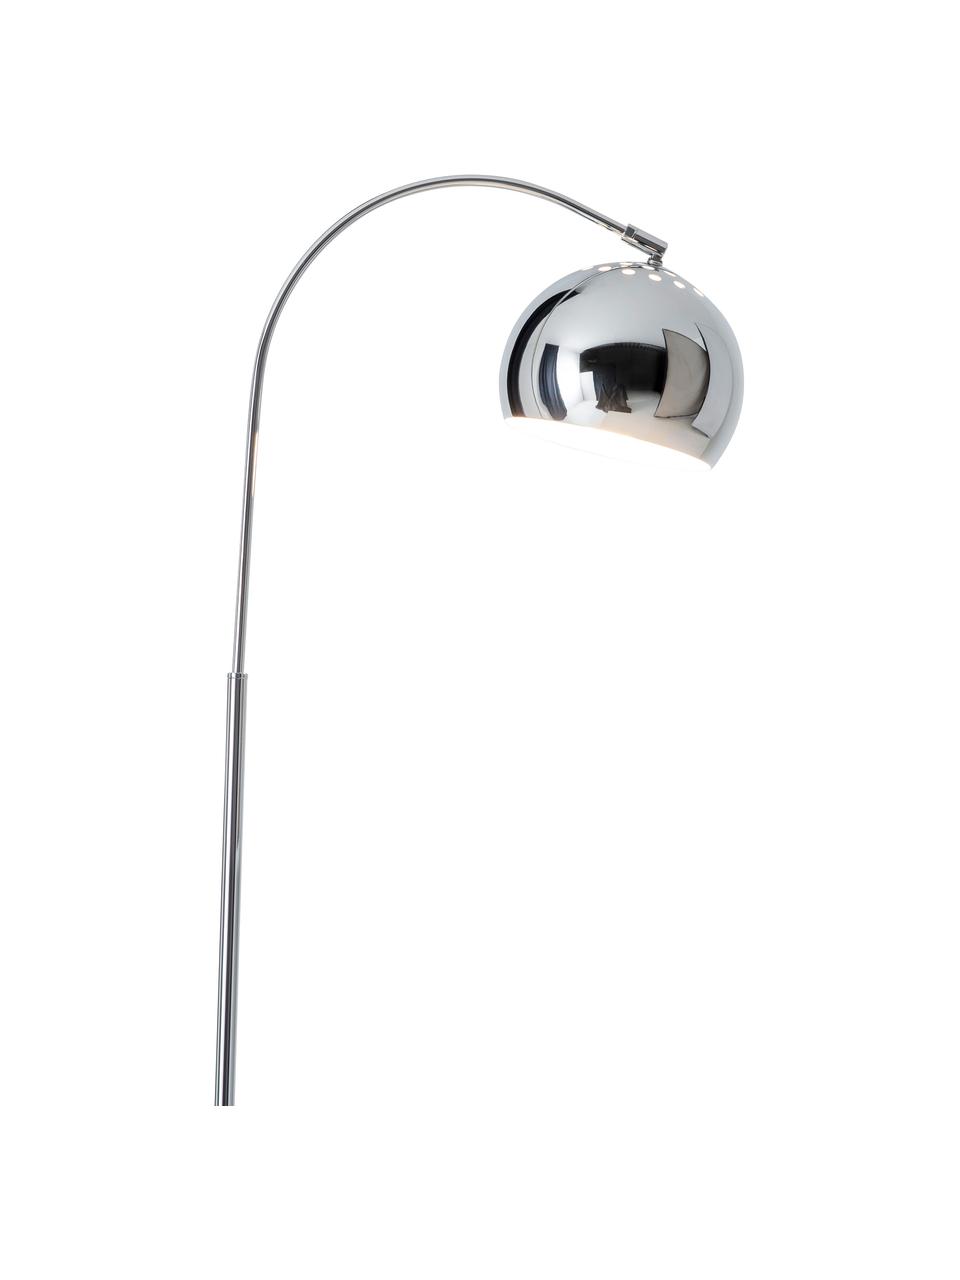 Leeslamp Style in zilverkleur, Lampenkap: metaal, Lampvoet: metaal, Zilverkleurig, 25 x 146 cm